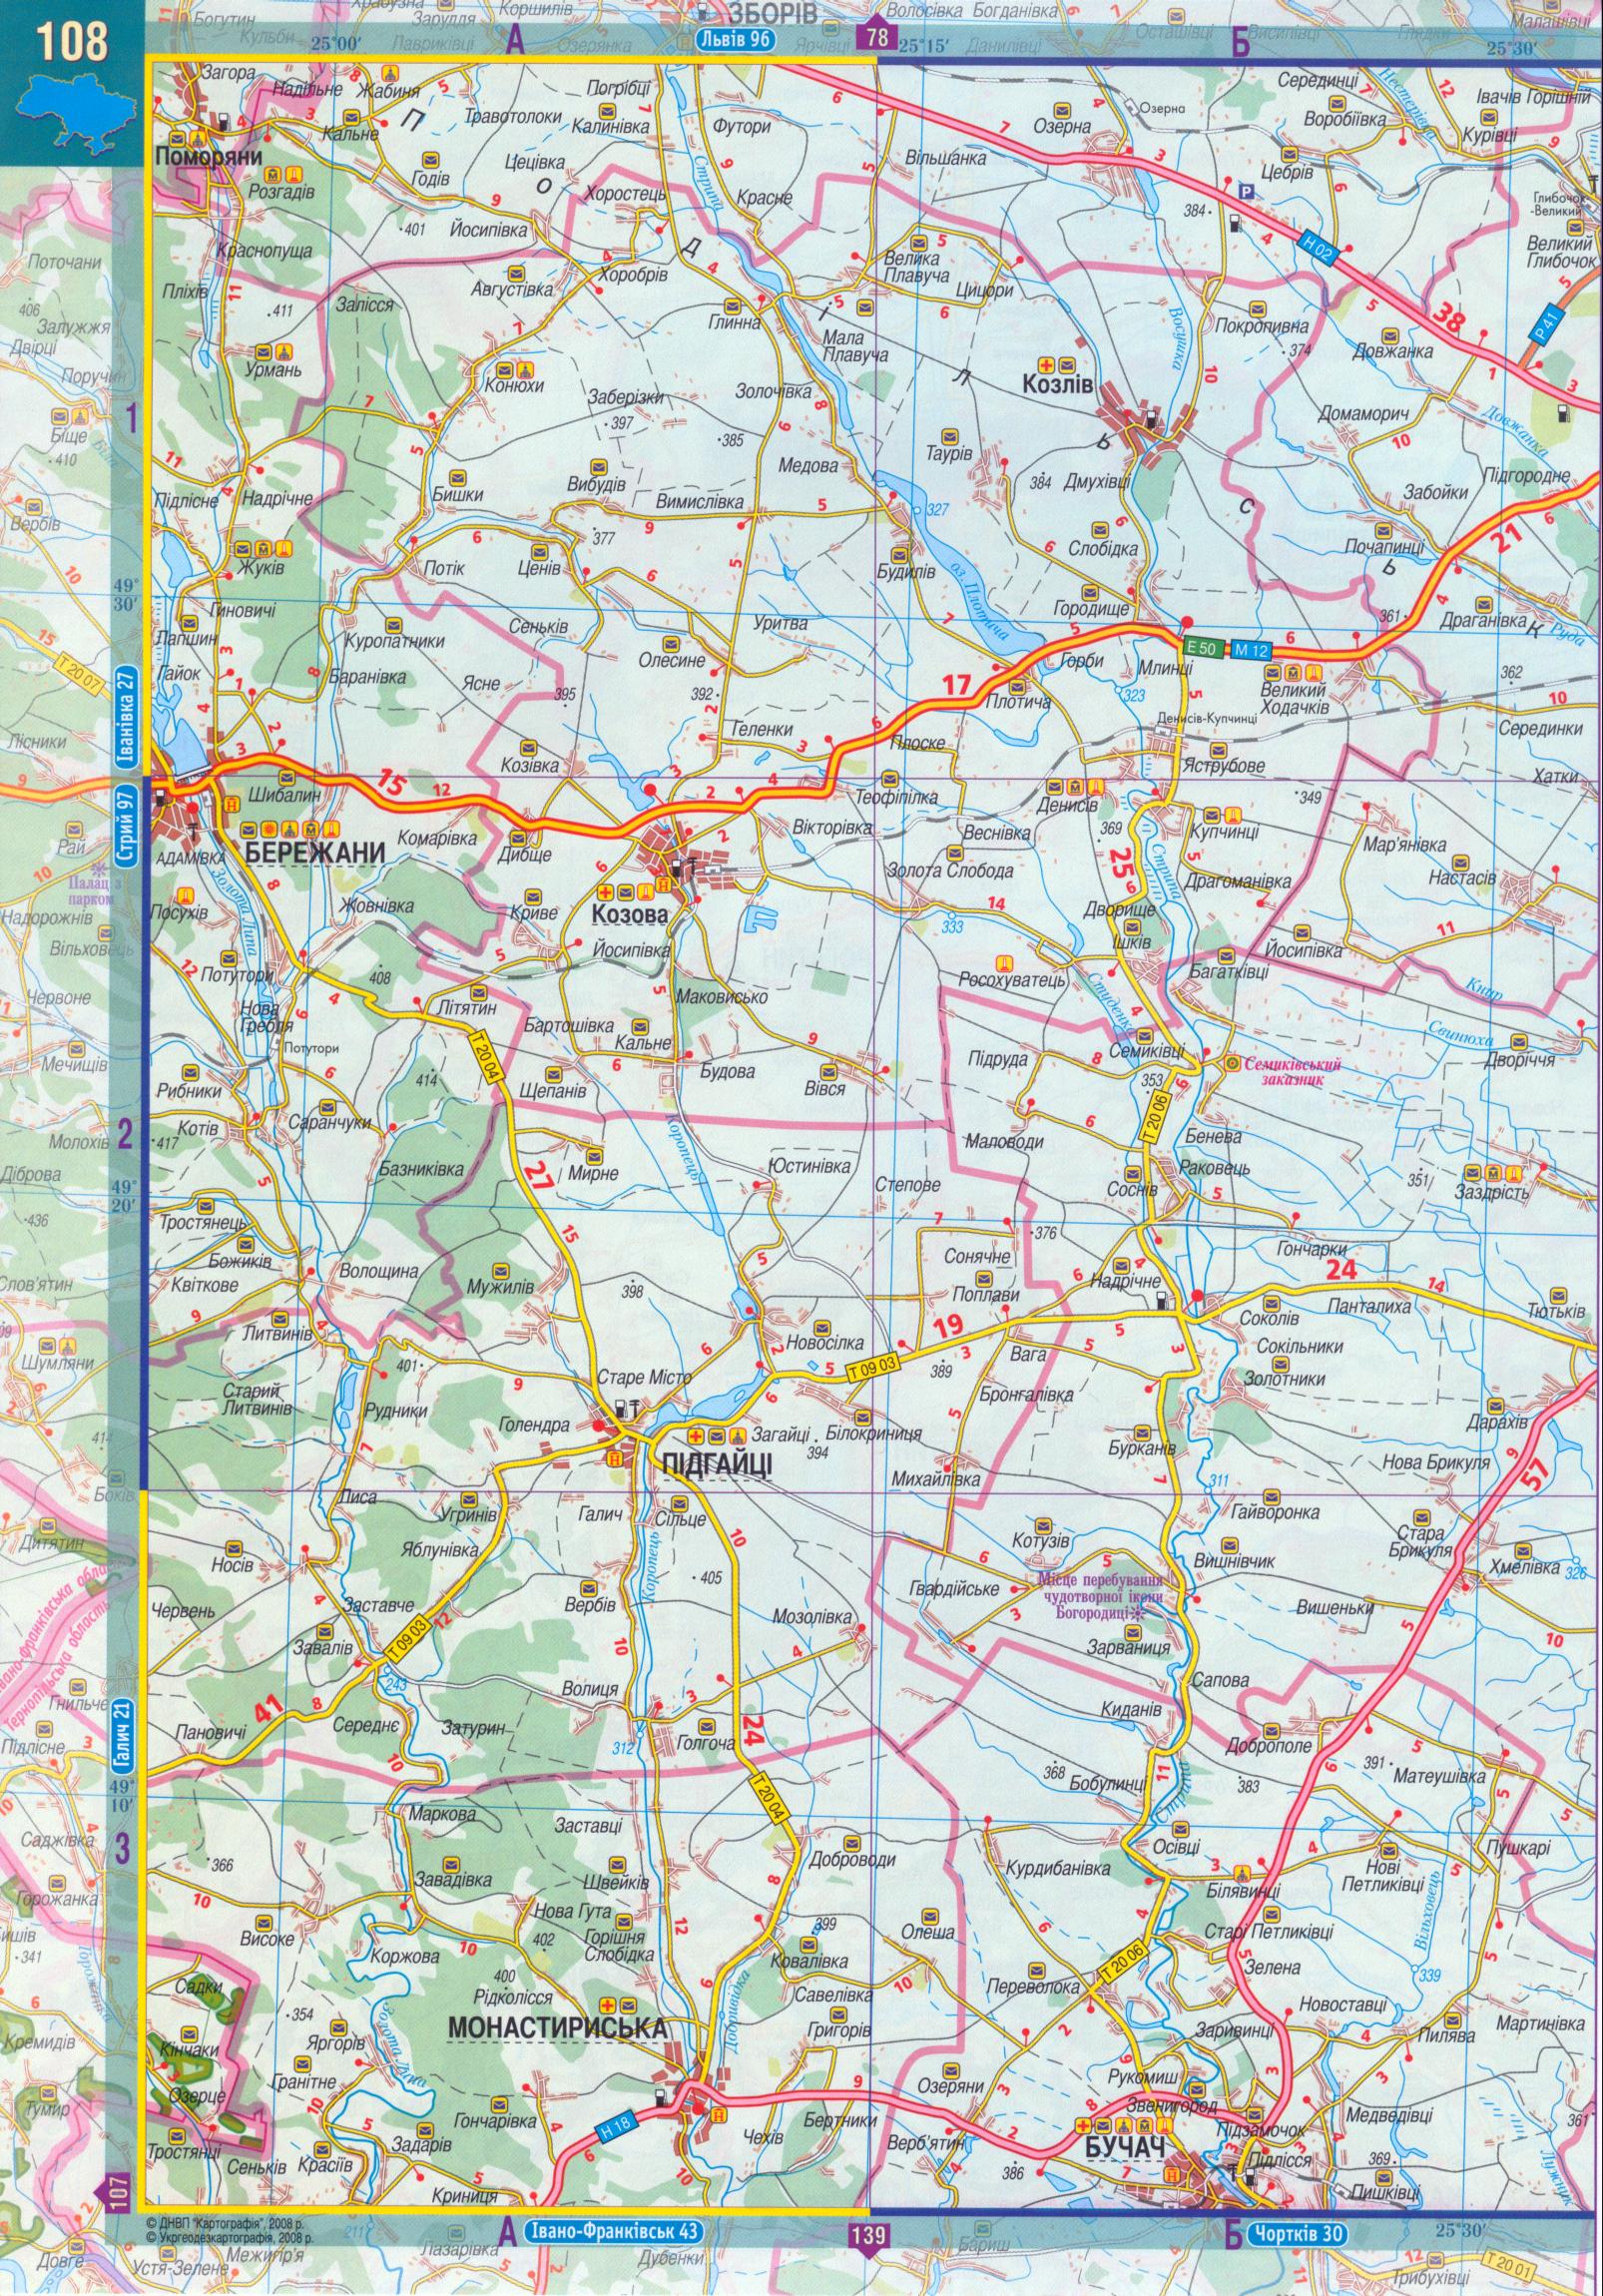 Карта Тернопольской области масштаба 1см:2,5км. Атлас автомобильных дорог 2008 года - карта Тернопольской области, A0 - 